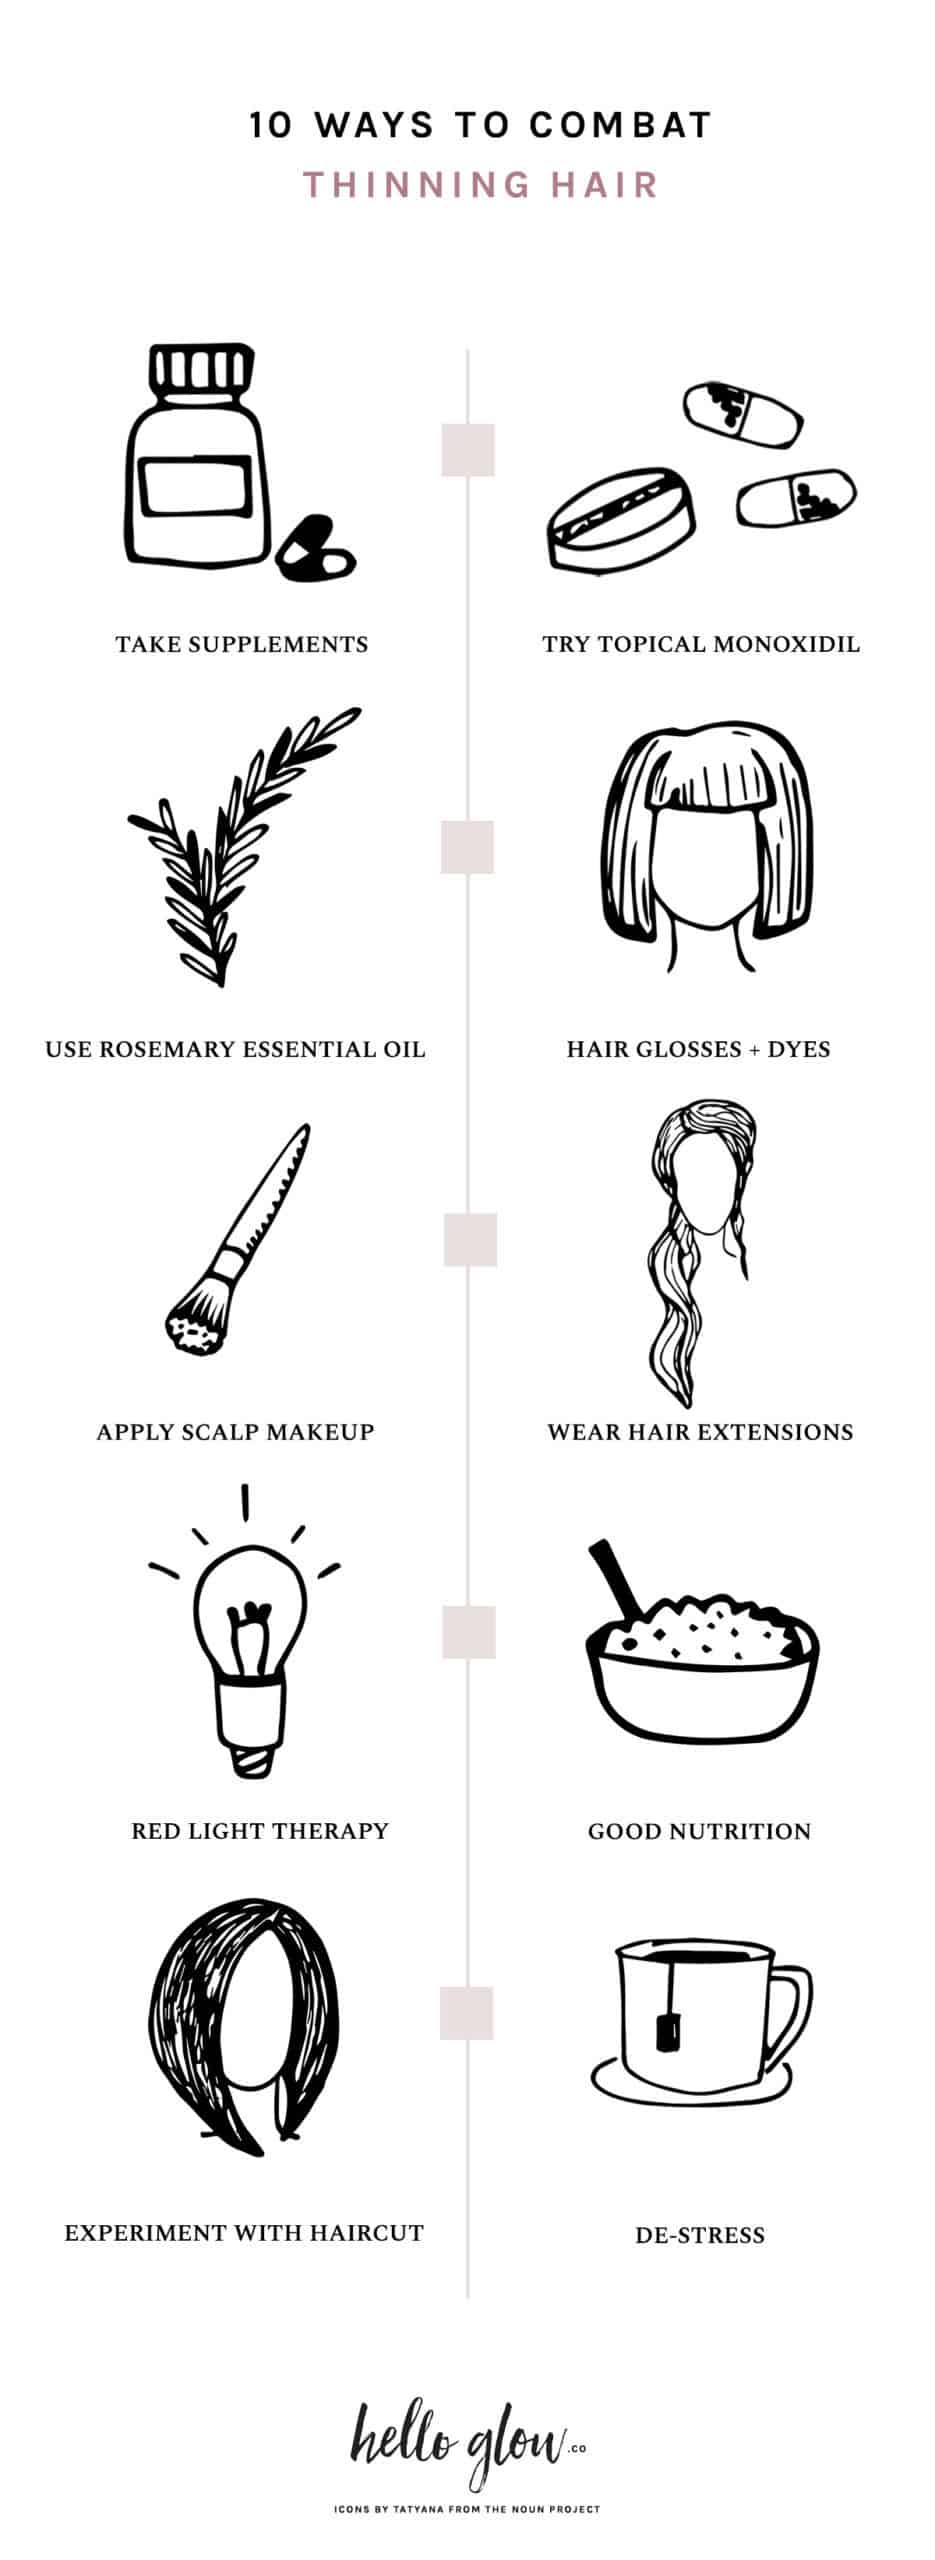 10 Ways to Combat Thinning Hair